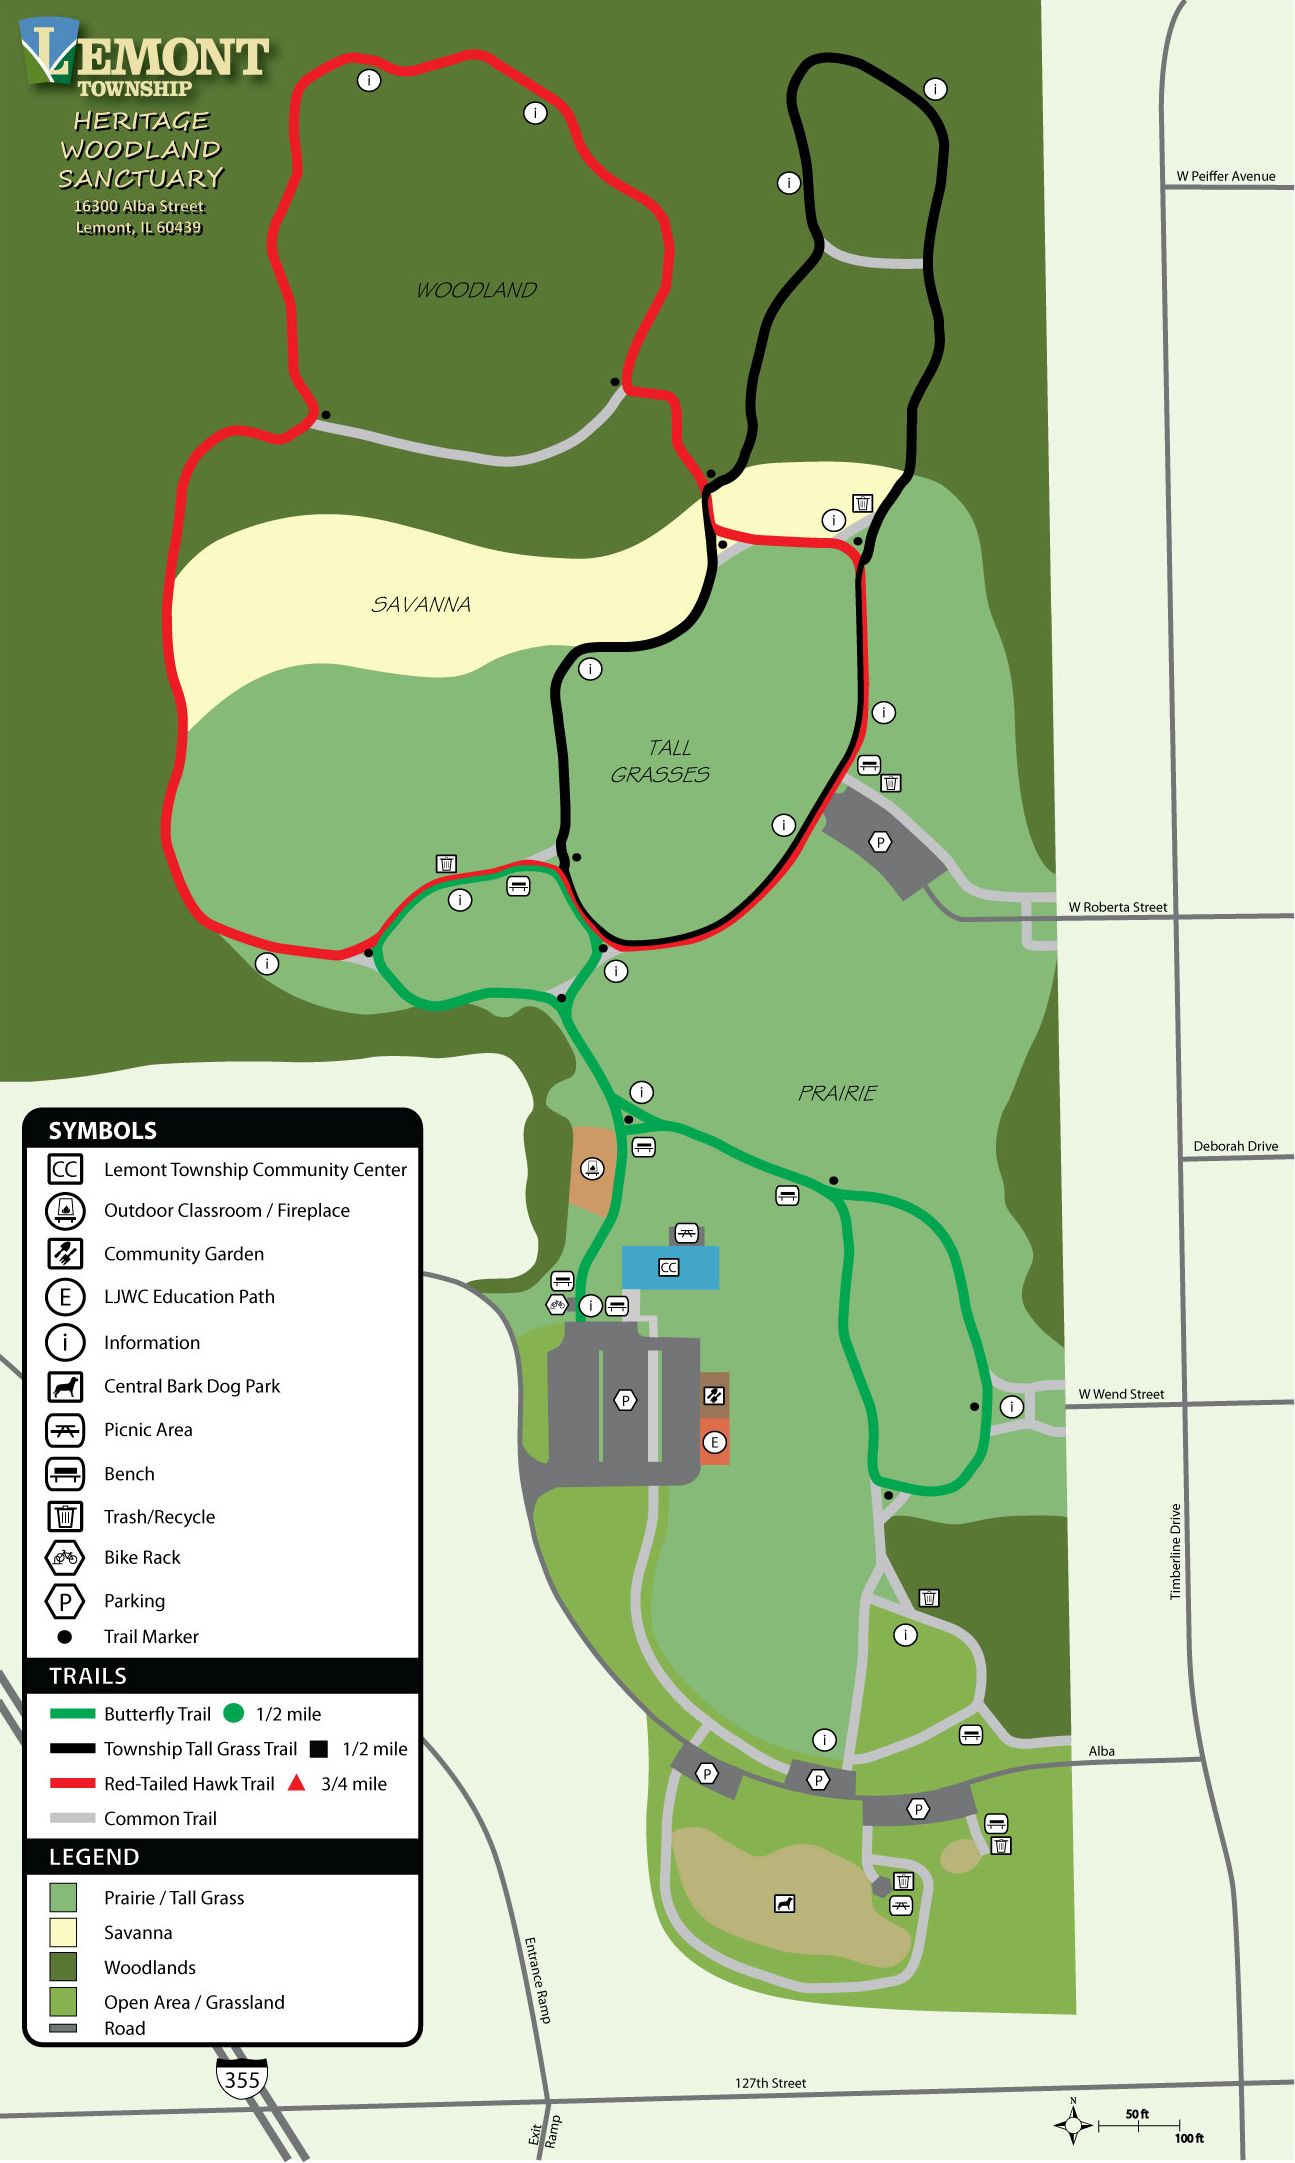 Woodlandland Sanctuary Sitemap Image